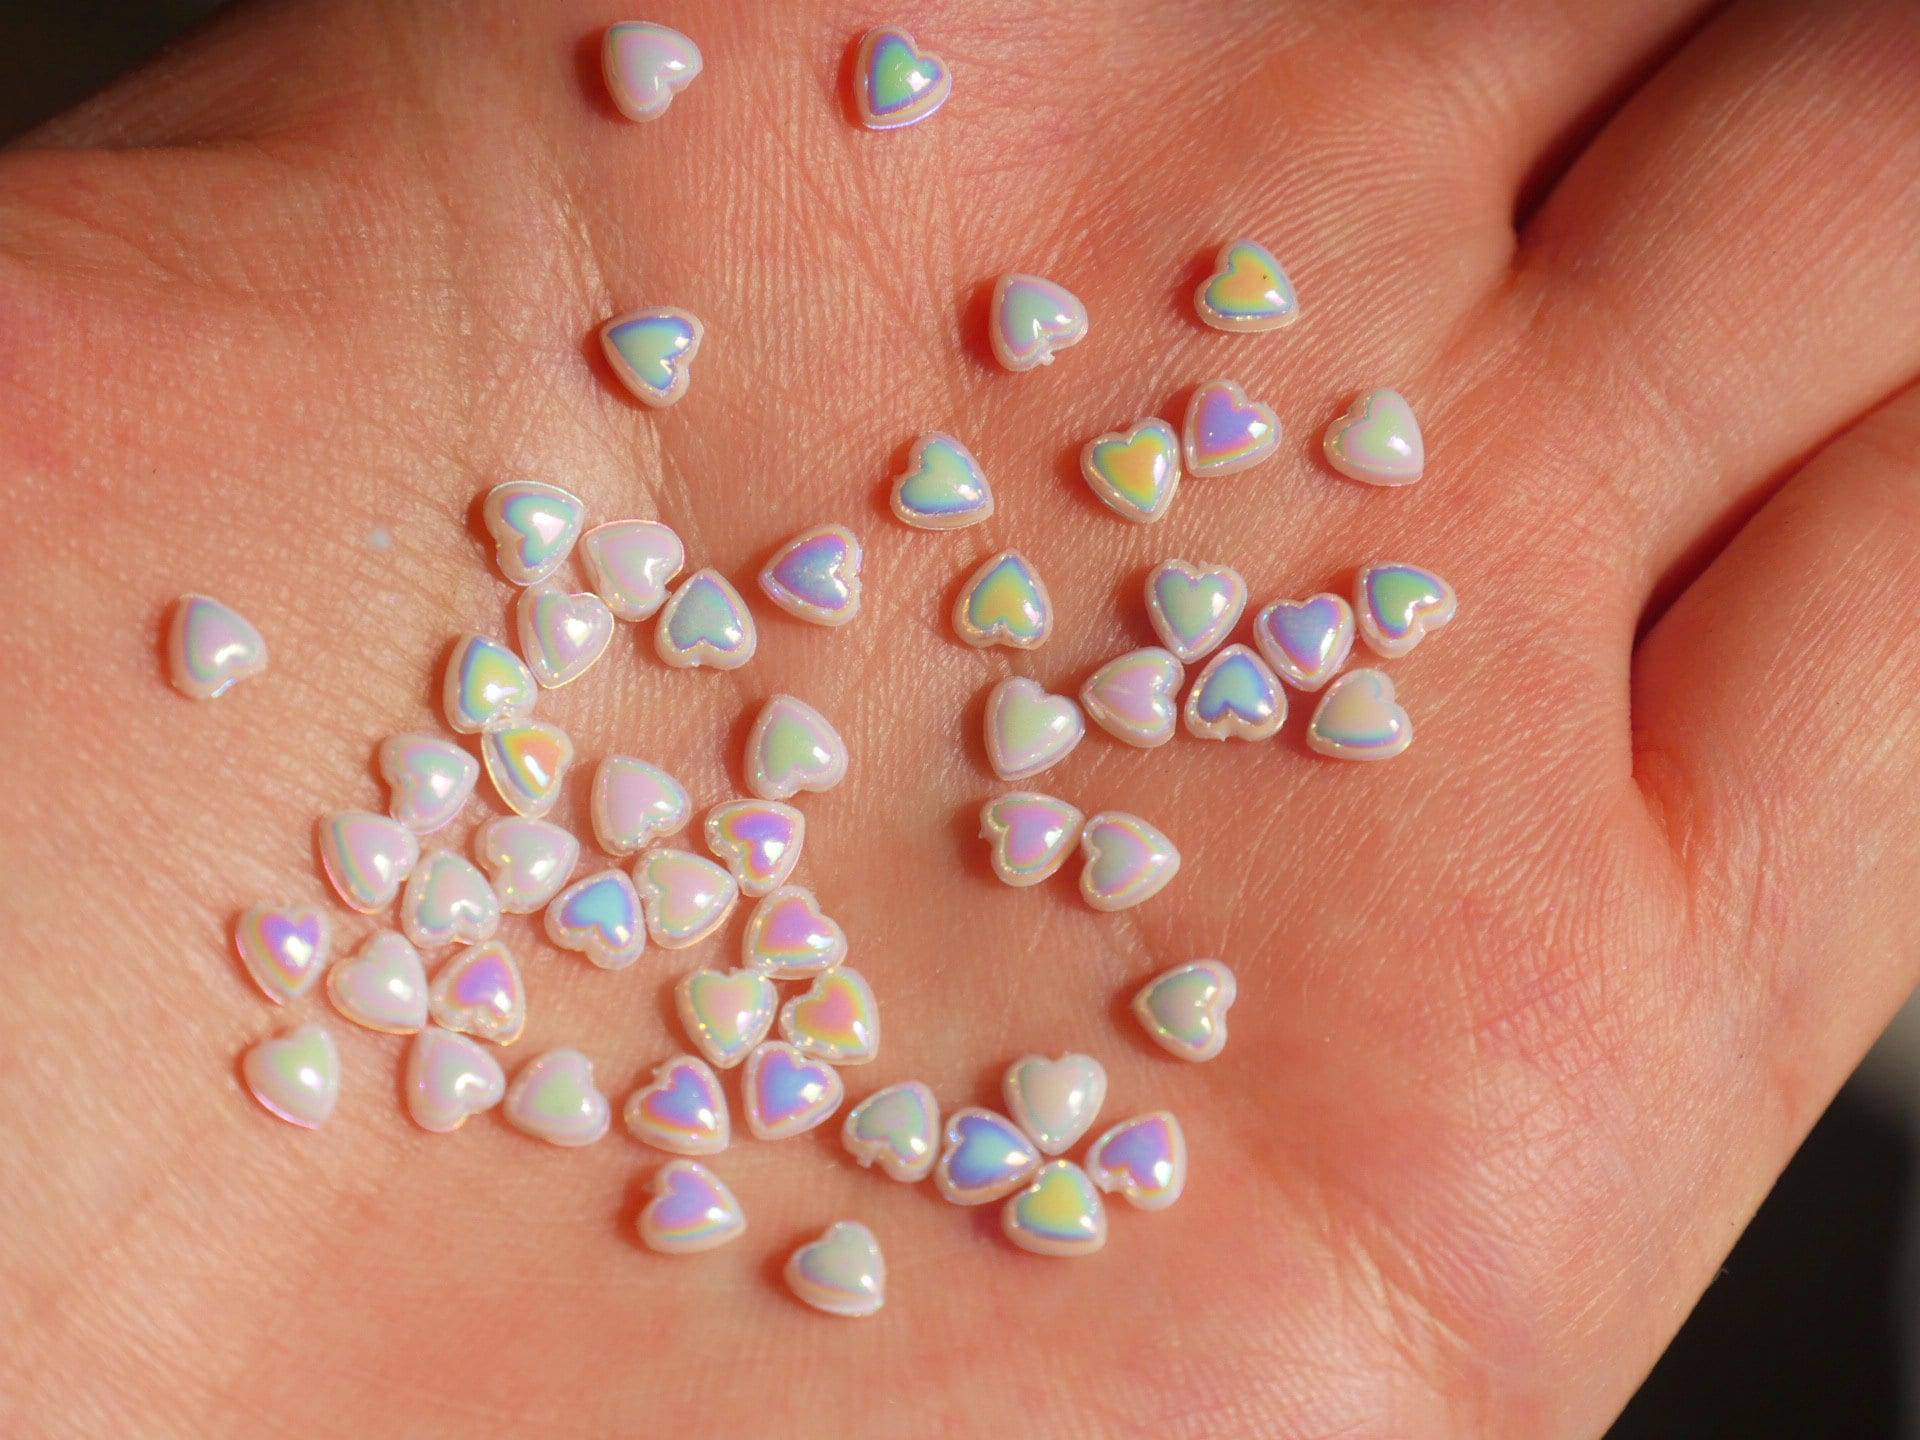 15 Stück Irisierende Perlmuttfarbene Perlglanz-Weiße Herzförmige Nagel-Charms-Nägel Kunst-Abziehbild / von Etsy - Makynail